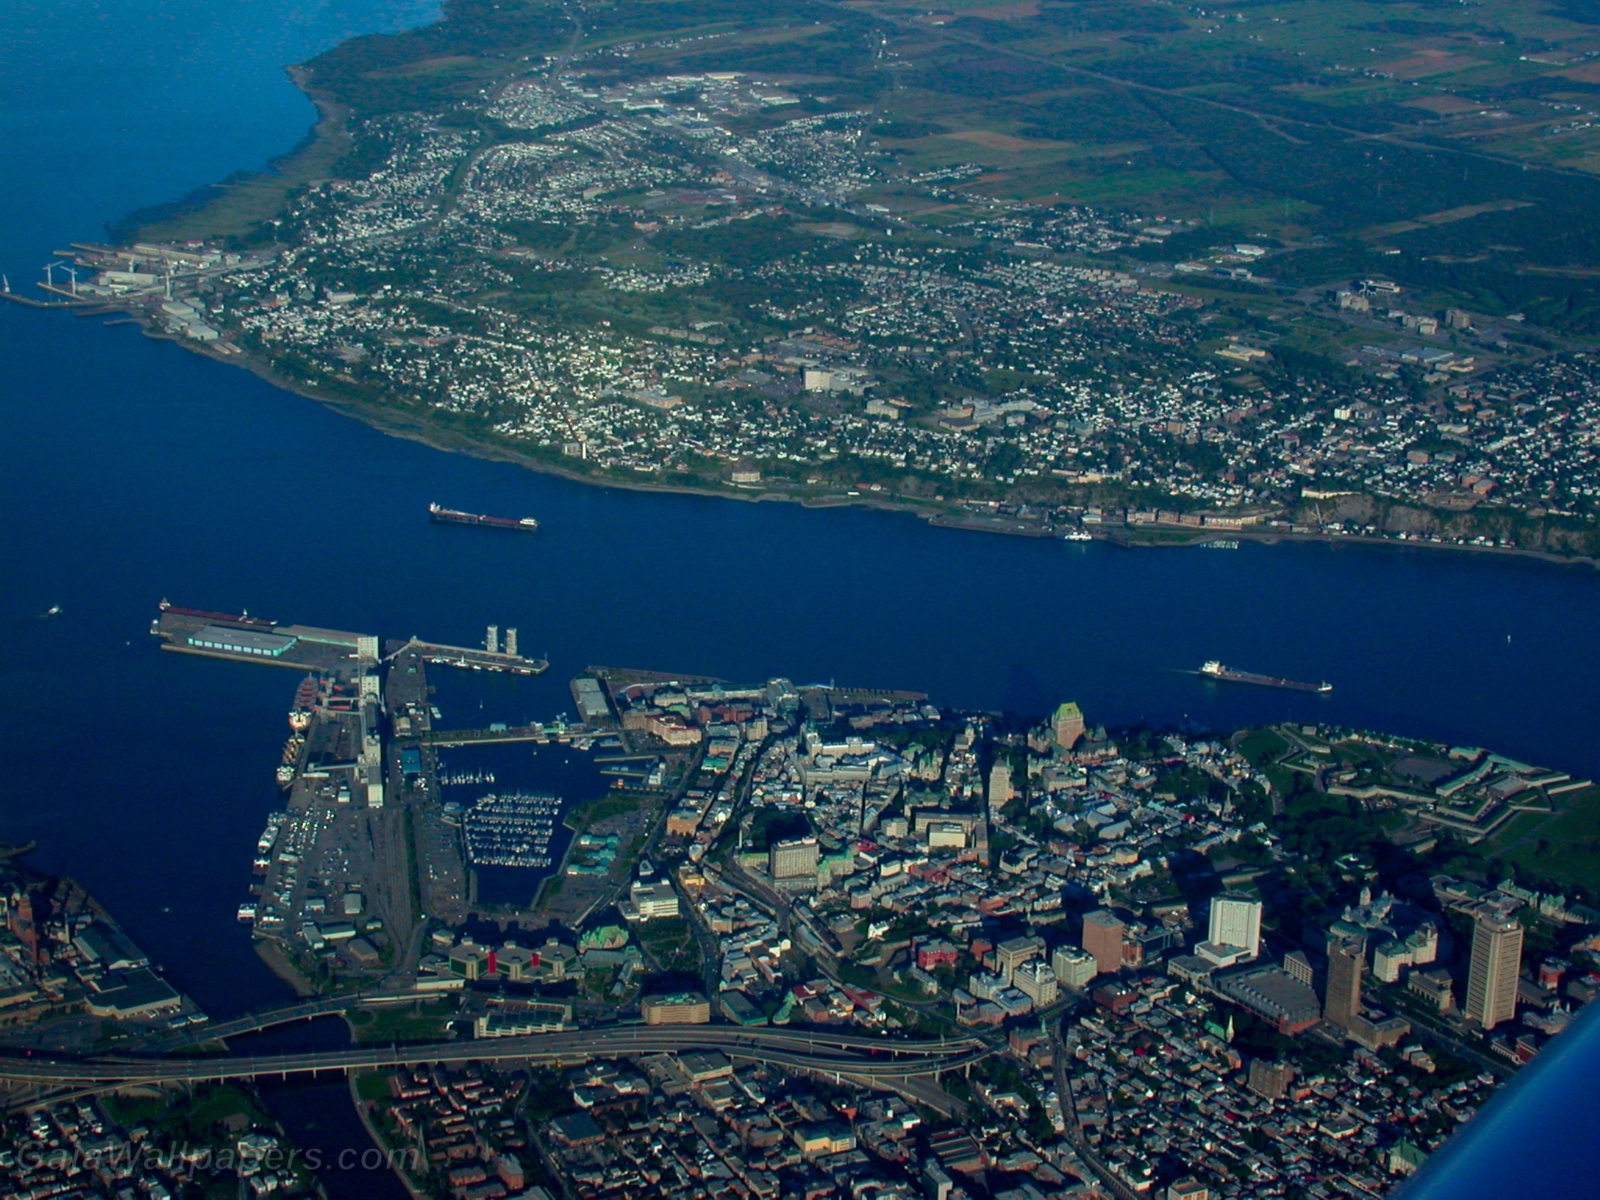 Villes de Québec vue des airs - Fonds d'écran gratuits